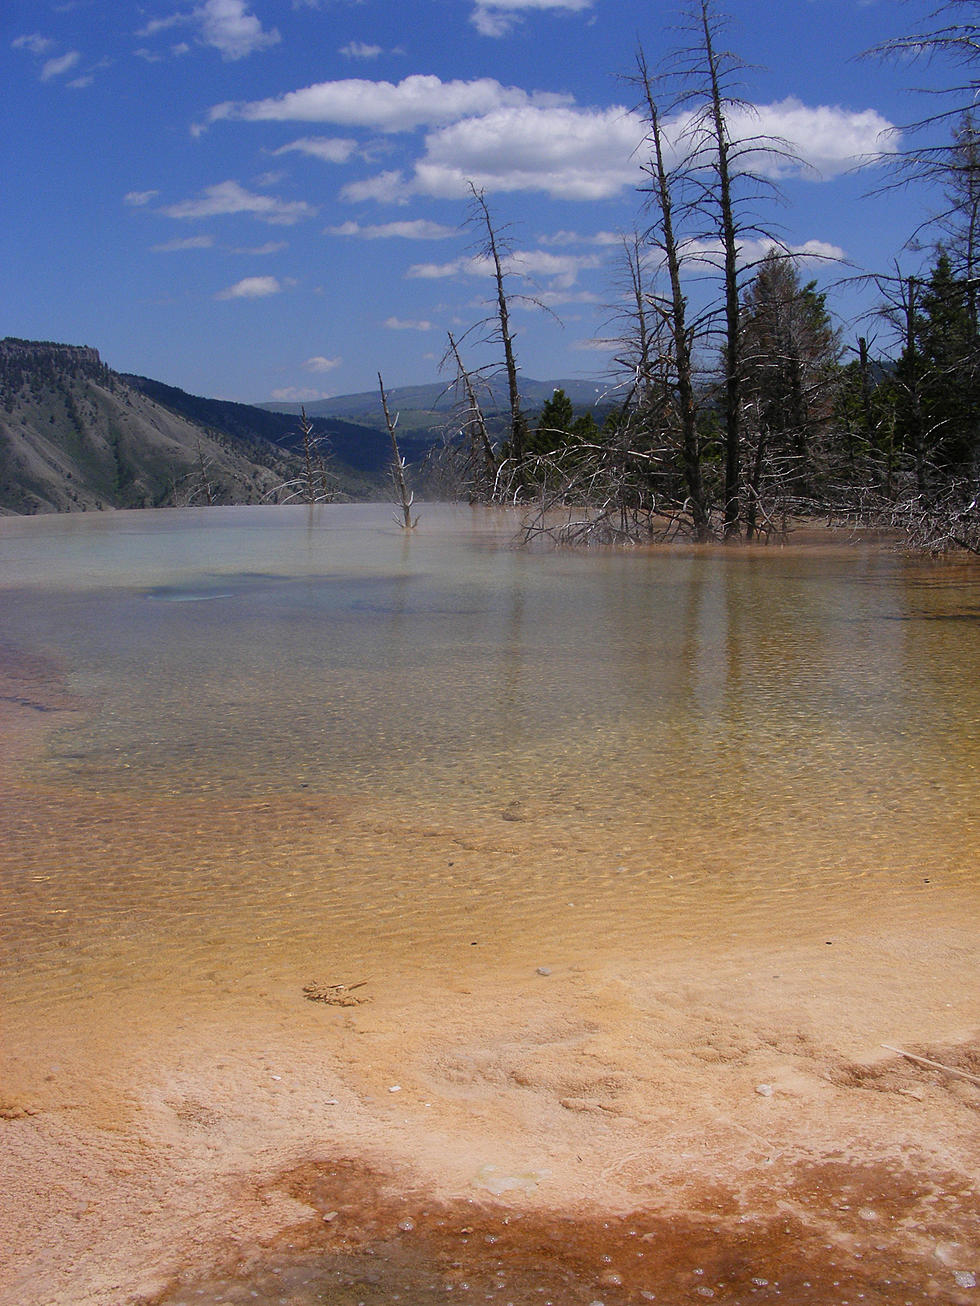 Yellowstone Habitats On ‘Top Ten’ Risk List